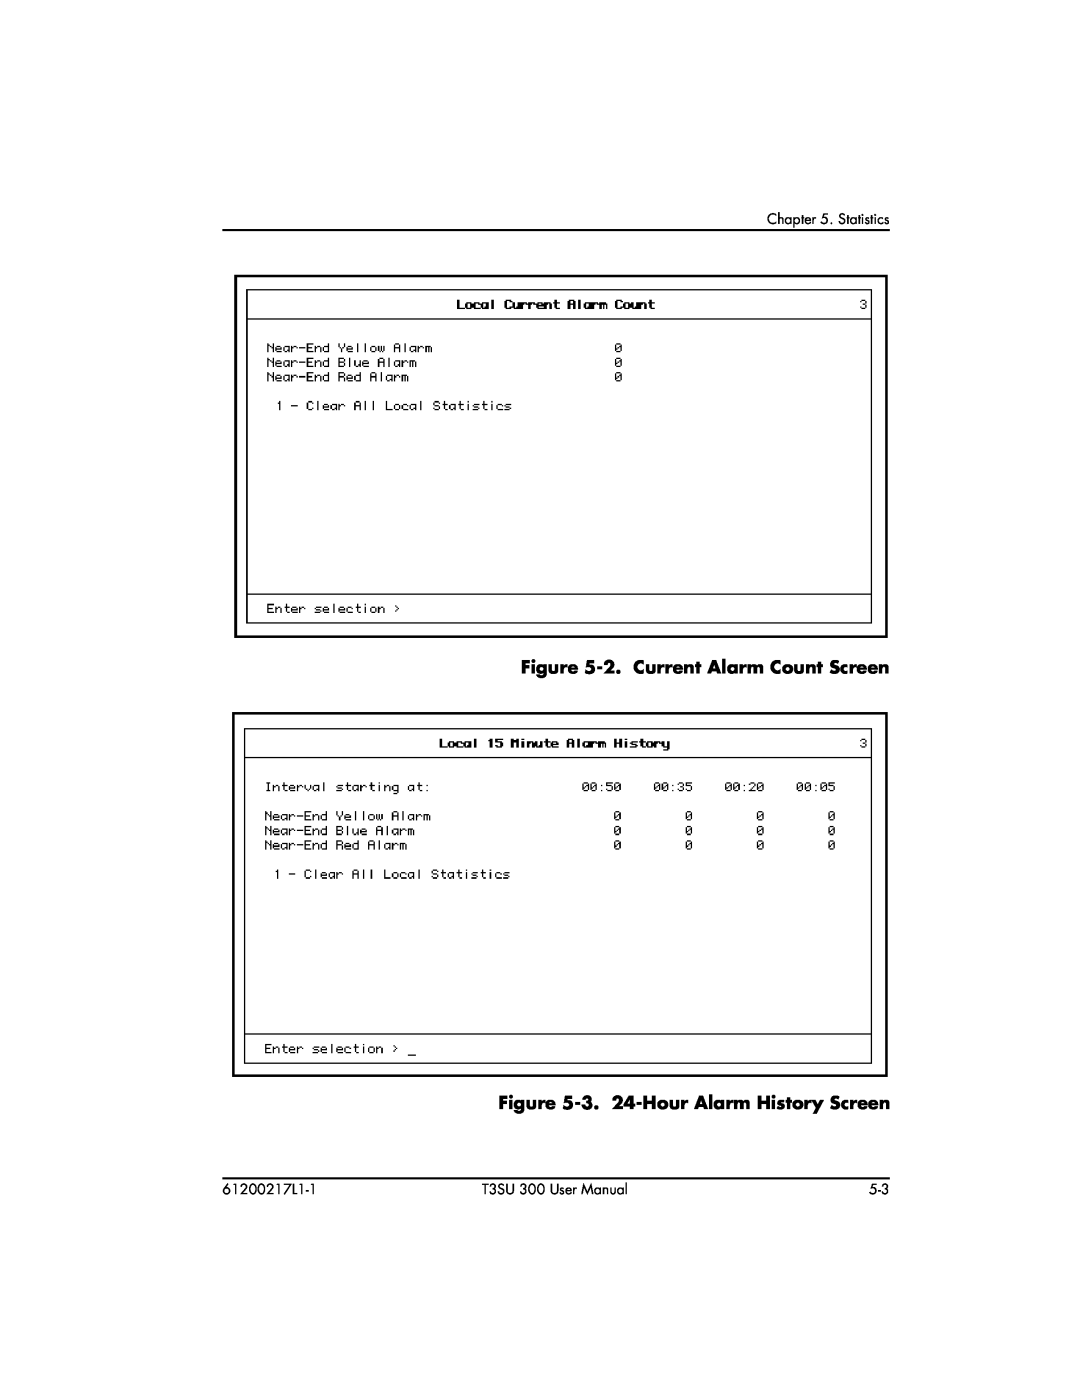 ADTRAN T3SU 300 user manual 2. Current Alarm Count Screen, 3. 24-Hour Alarm History Screen, Statistics, 61200217L1-1 